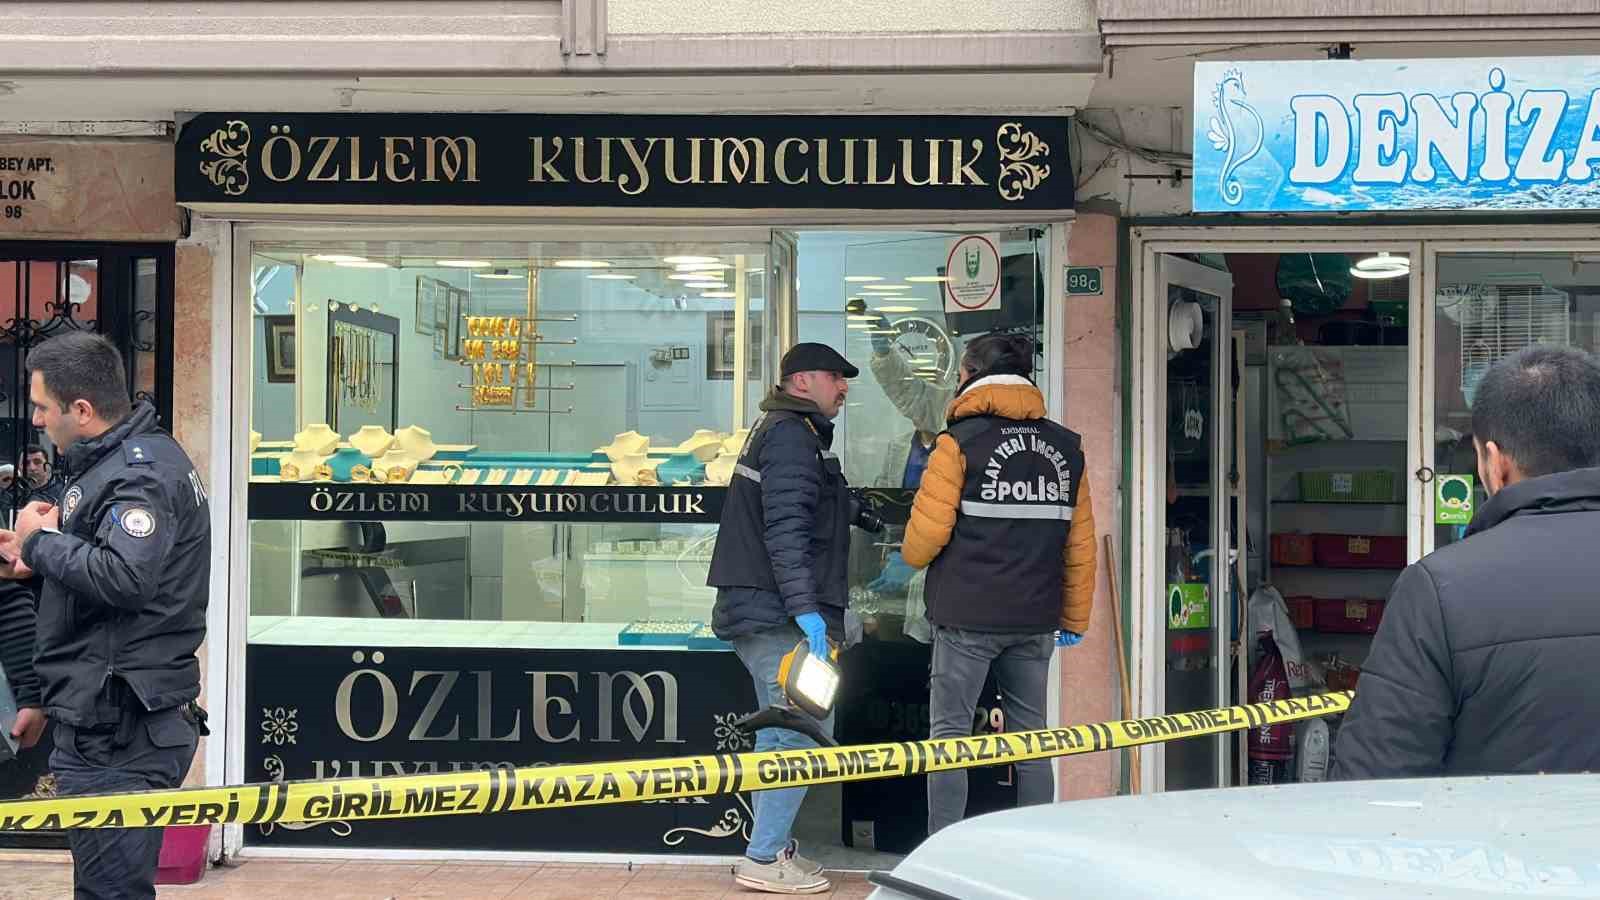 Bursa’da kuyumcu soygunu şüphelileri yakalandı: Soygunu sanal bahis borcu yüzünden yapmışlar